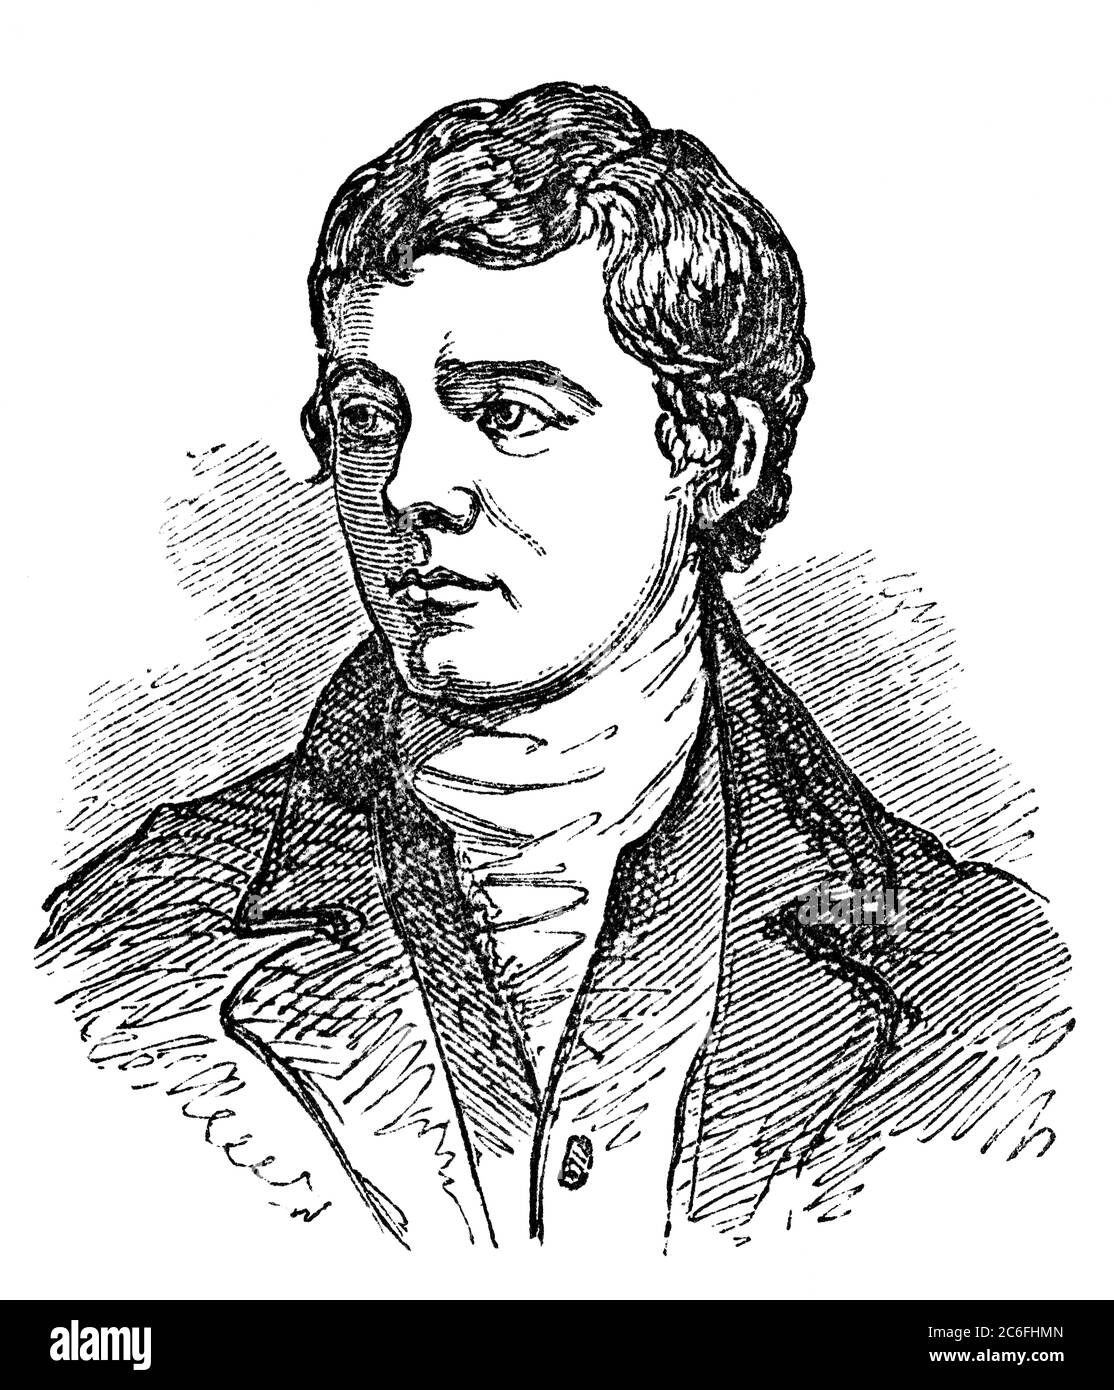 Un portrait d'illustration vintage gravé de Robert Burns, le célèbre poète écossais et auteur d'Auld Lang Syne, d'un livre victorien daté du 1 Banque D'Images